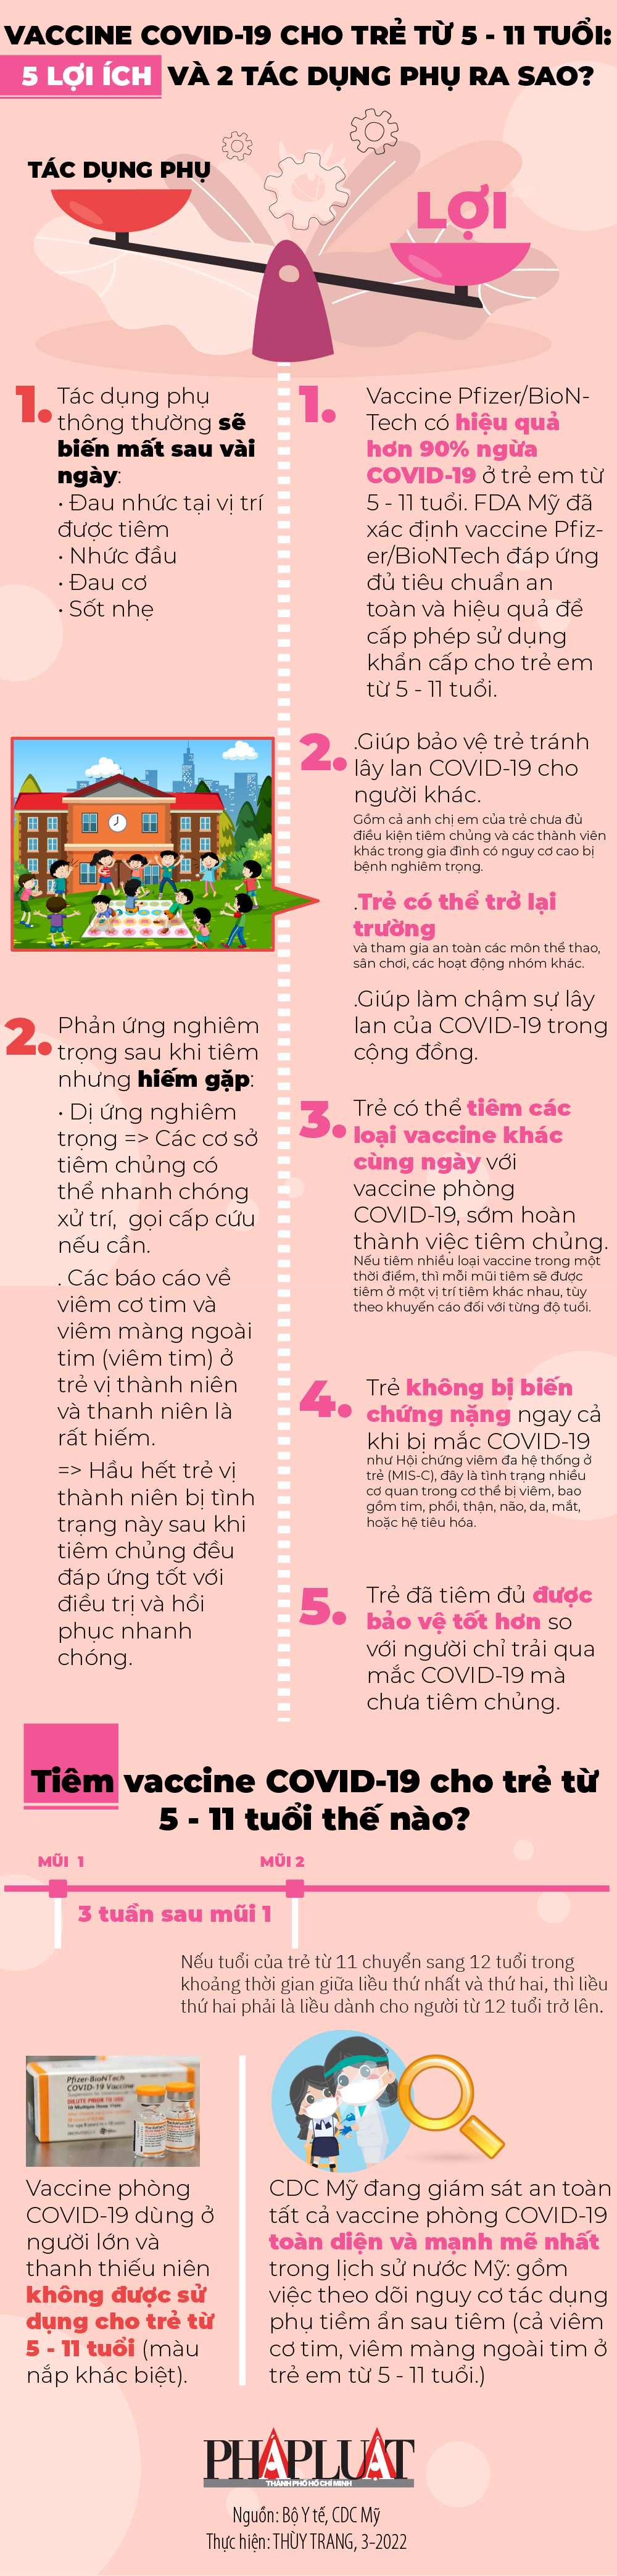 infographic-5-loi-2-tac-dung-phu-tiem-vaccine-tre-em-5-11-tuoi-2022-01_wbrm